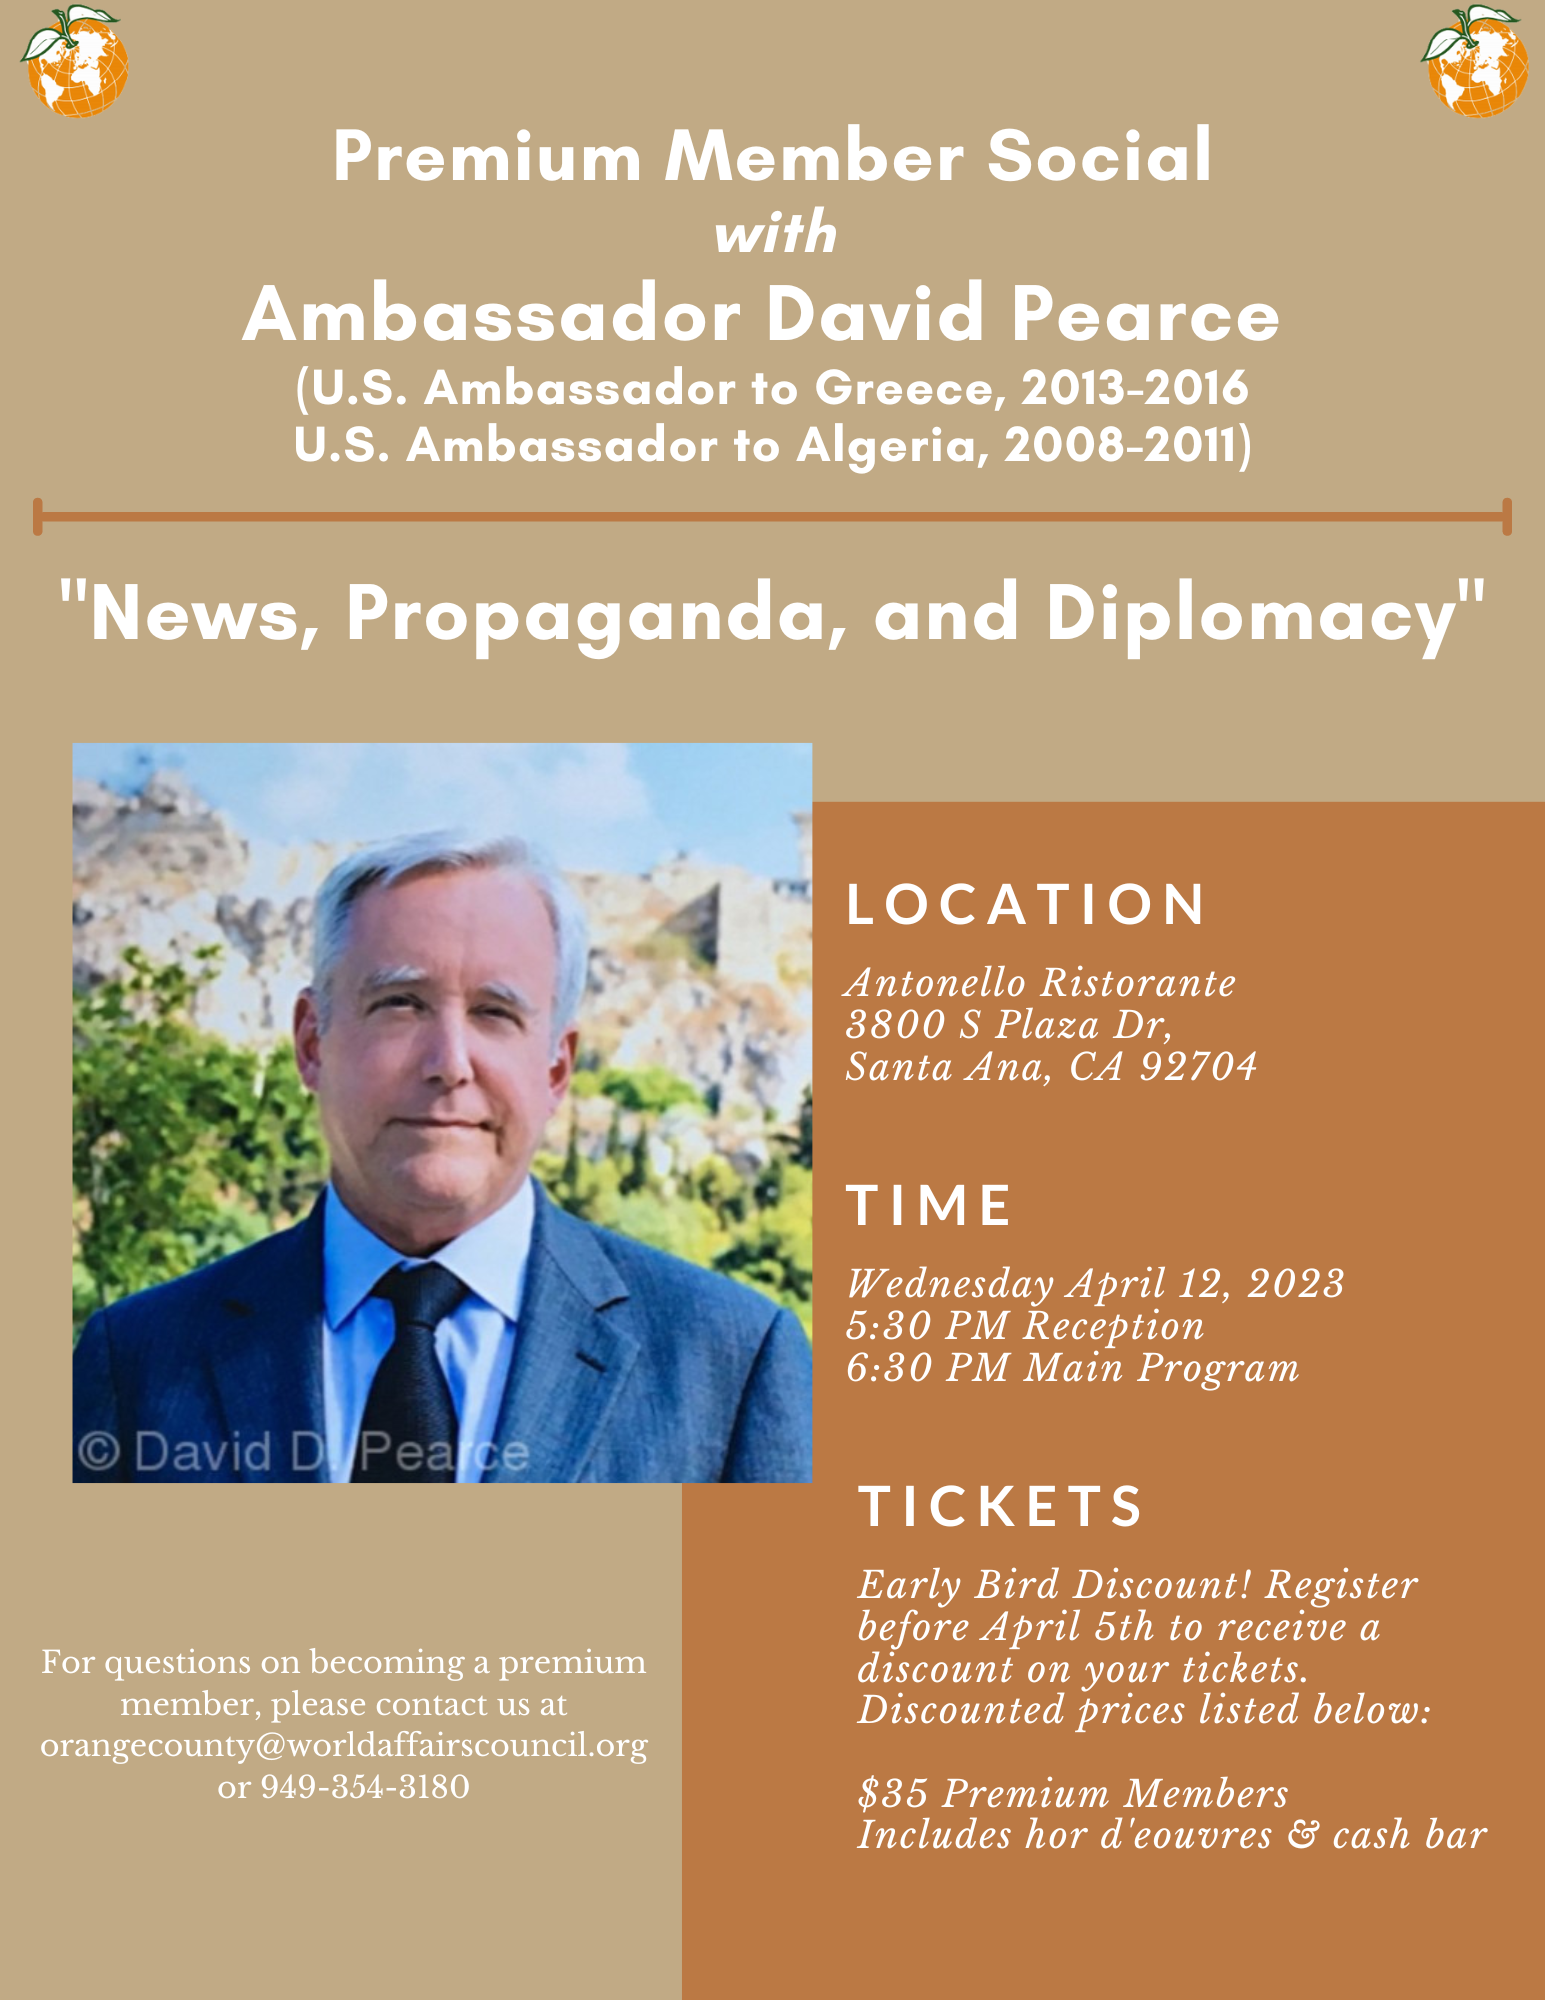 "News, Propaganda, and Diplomacy" with Amb. David Pearce